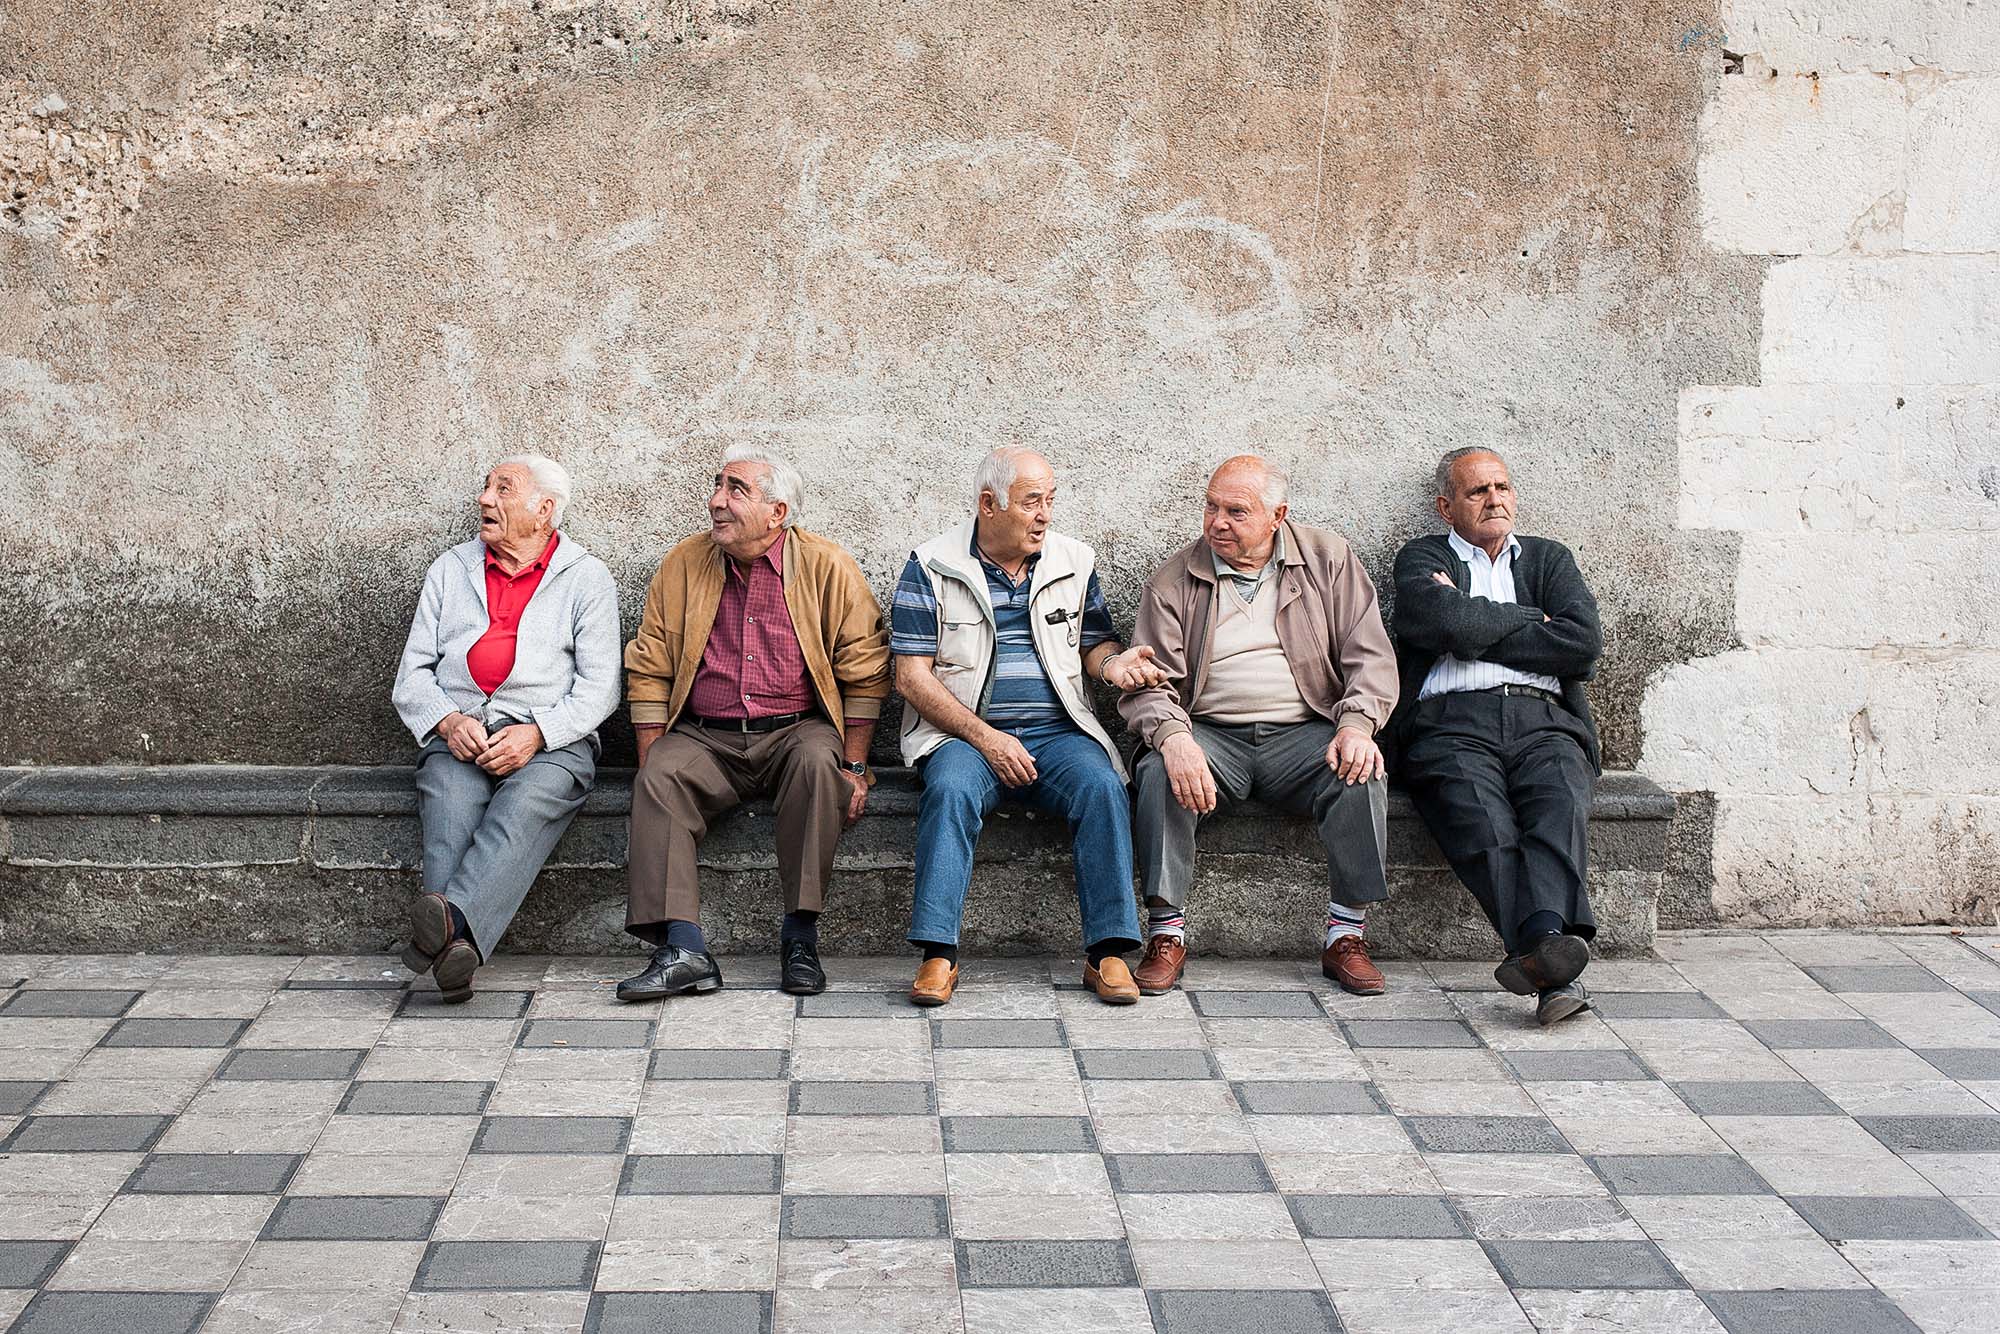  Elderly gentlemen, Sicily 